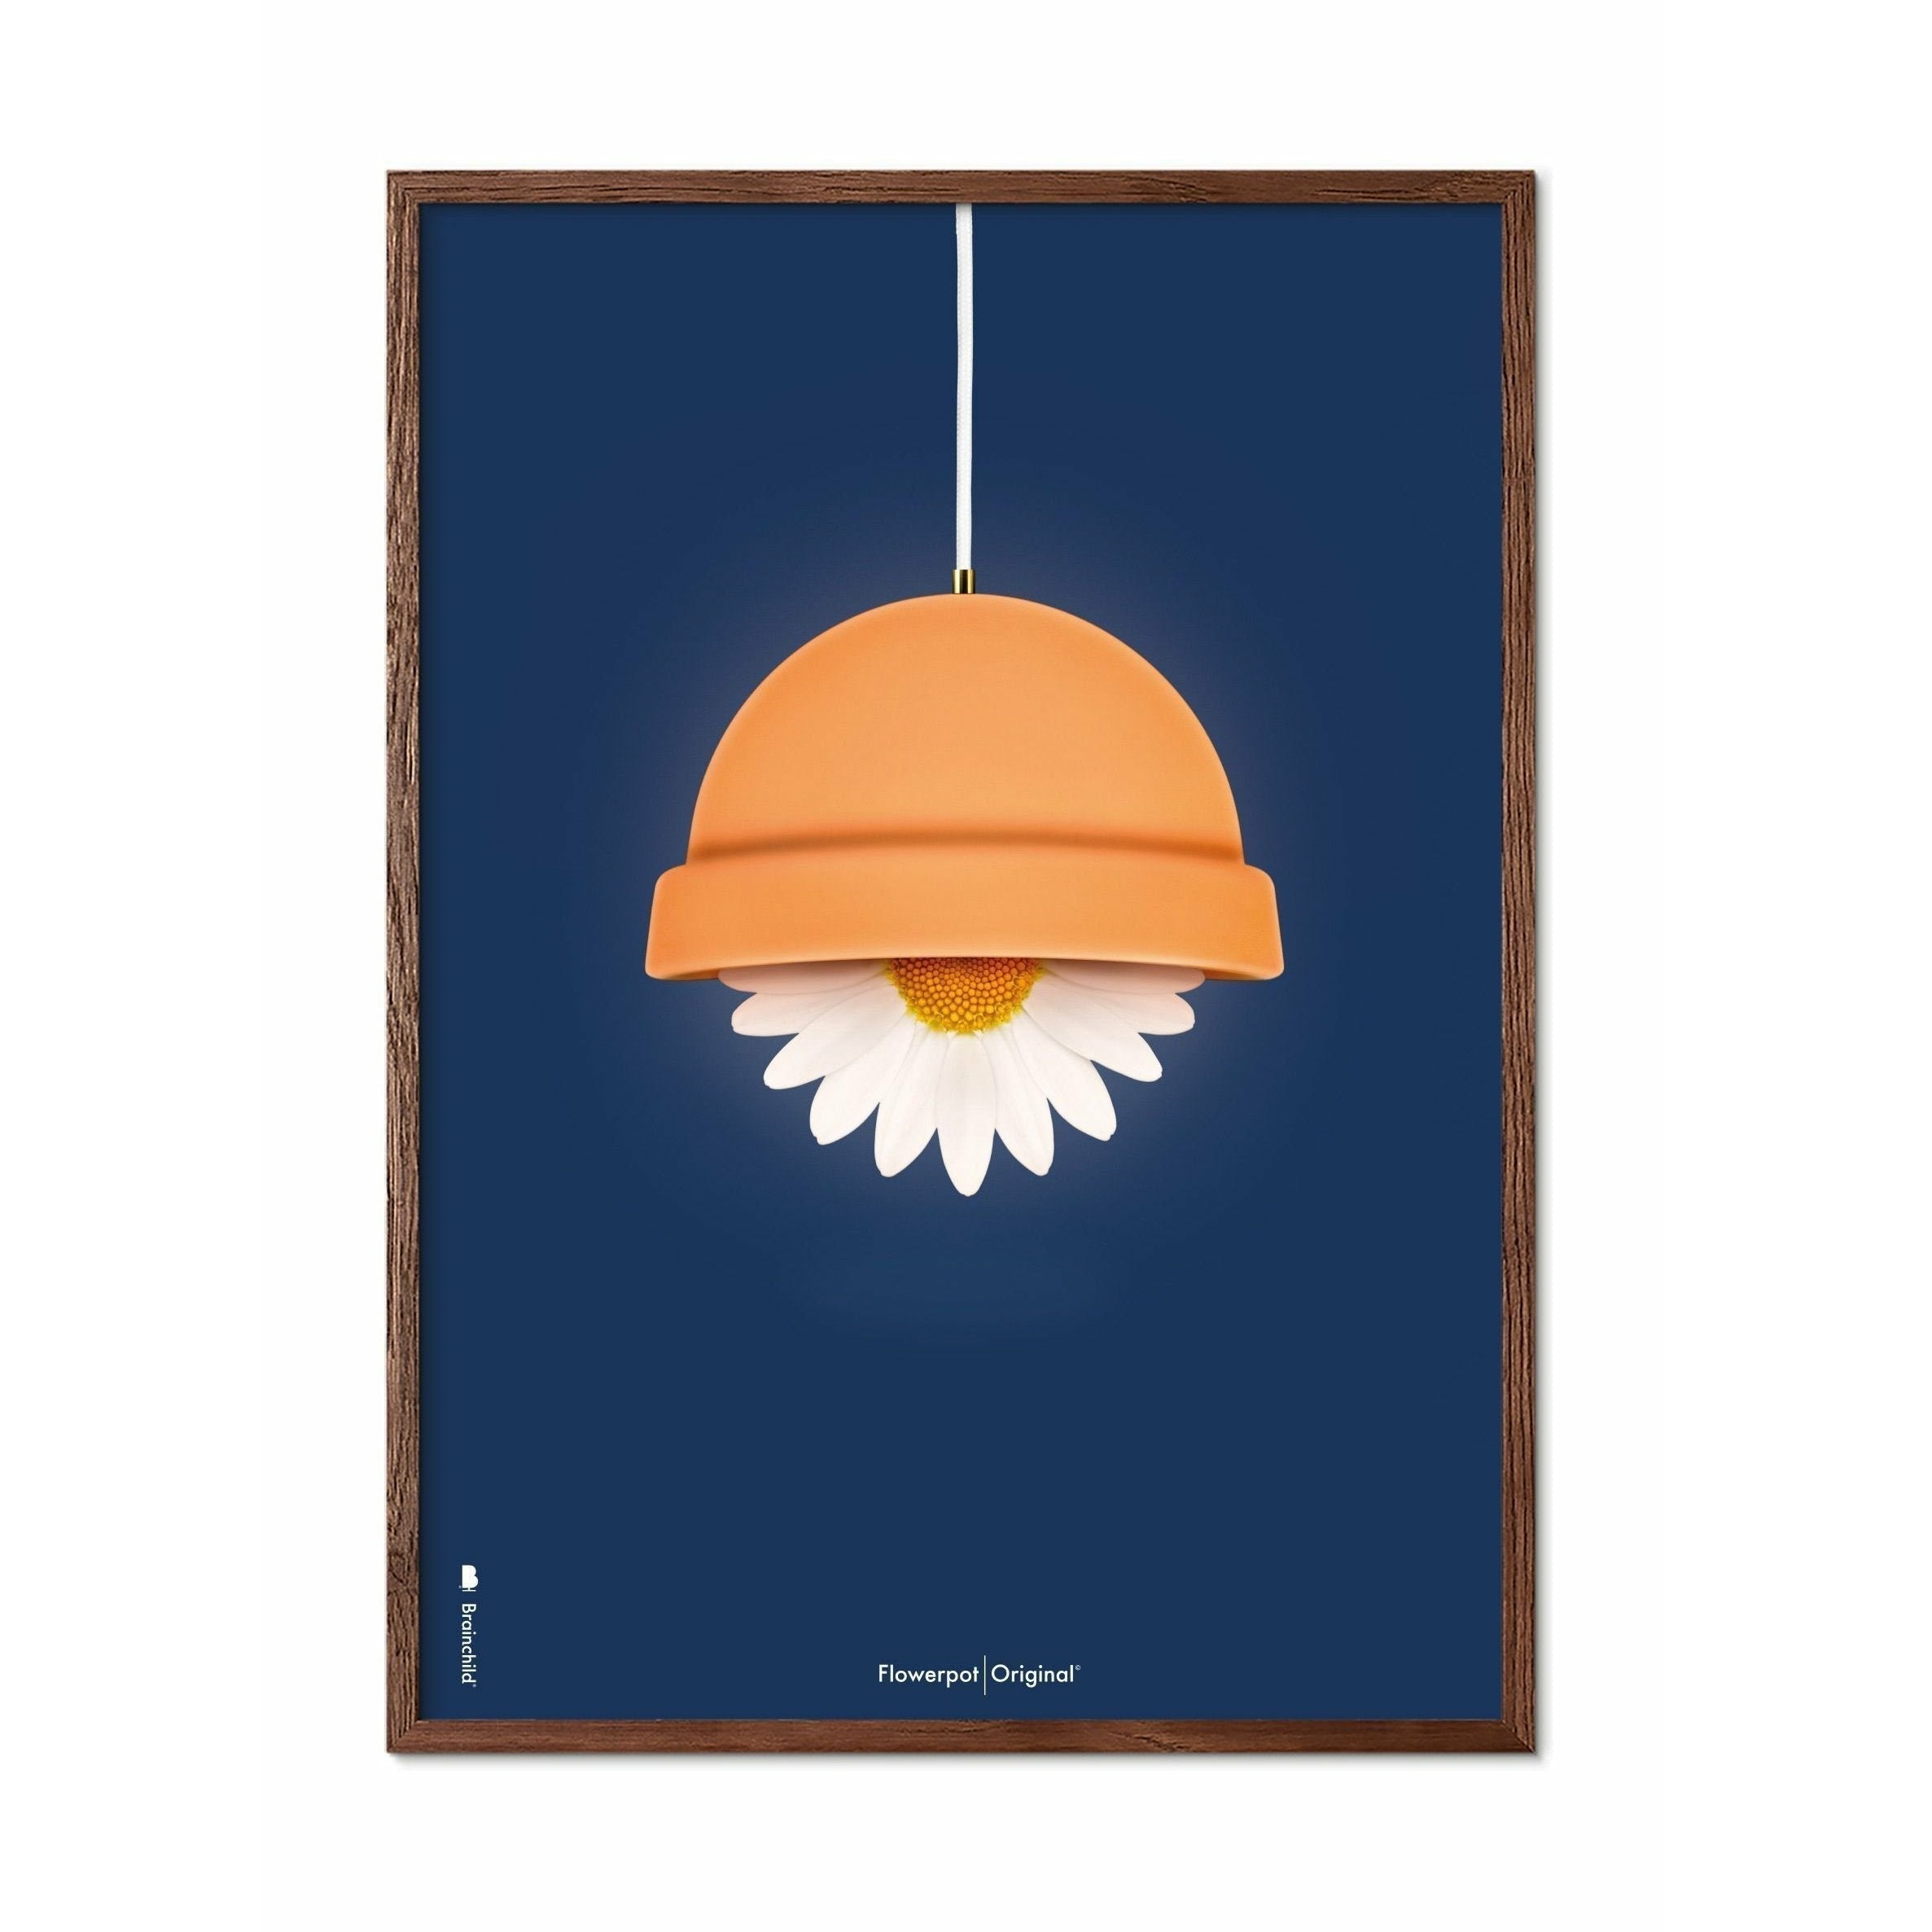 Brainchild Flowerpot Klassisk Plakat, Ramme I Mørkt Træ 30X40 Cm, Mørkeblå Baggrund